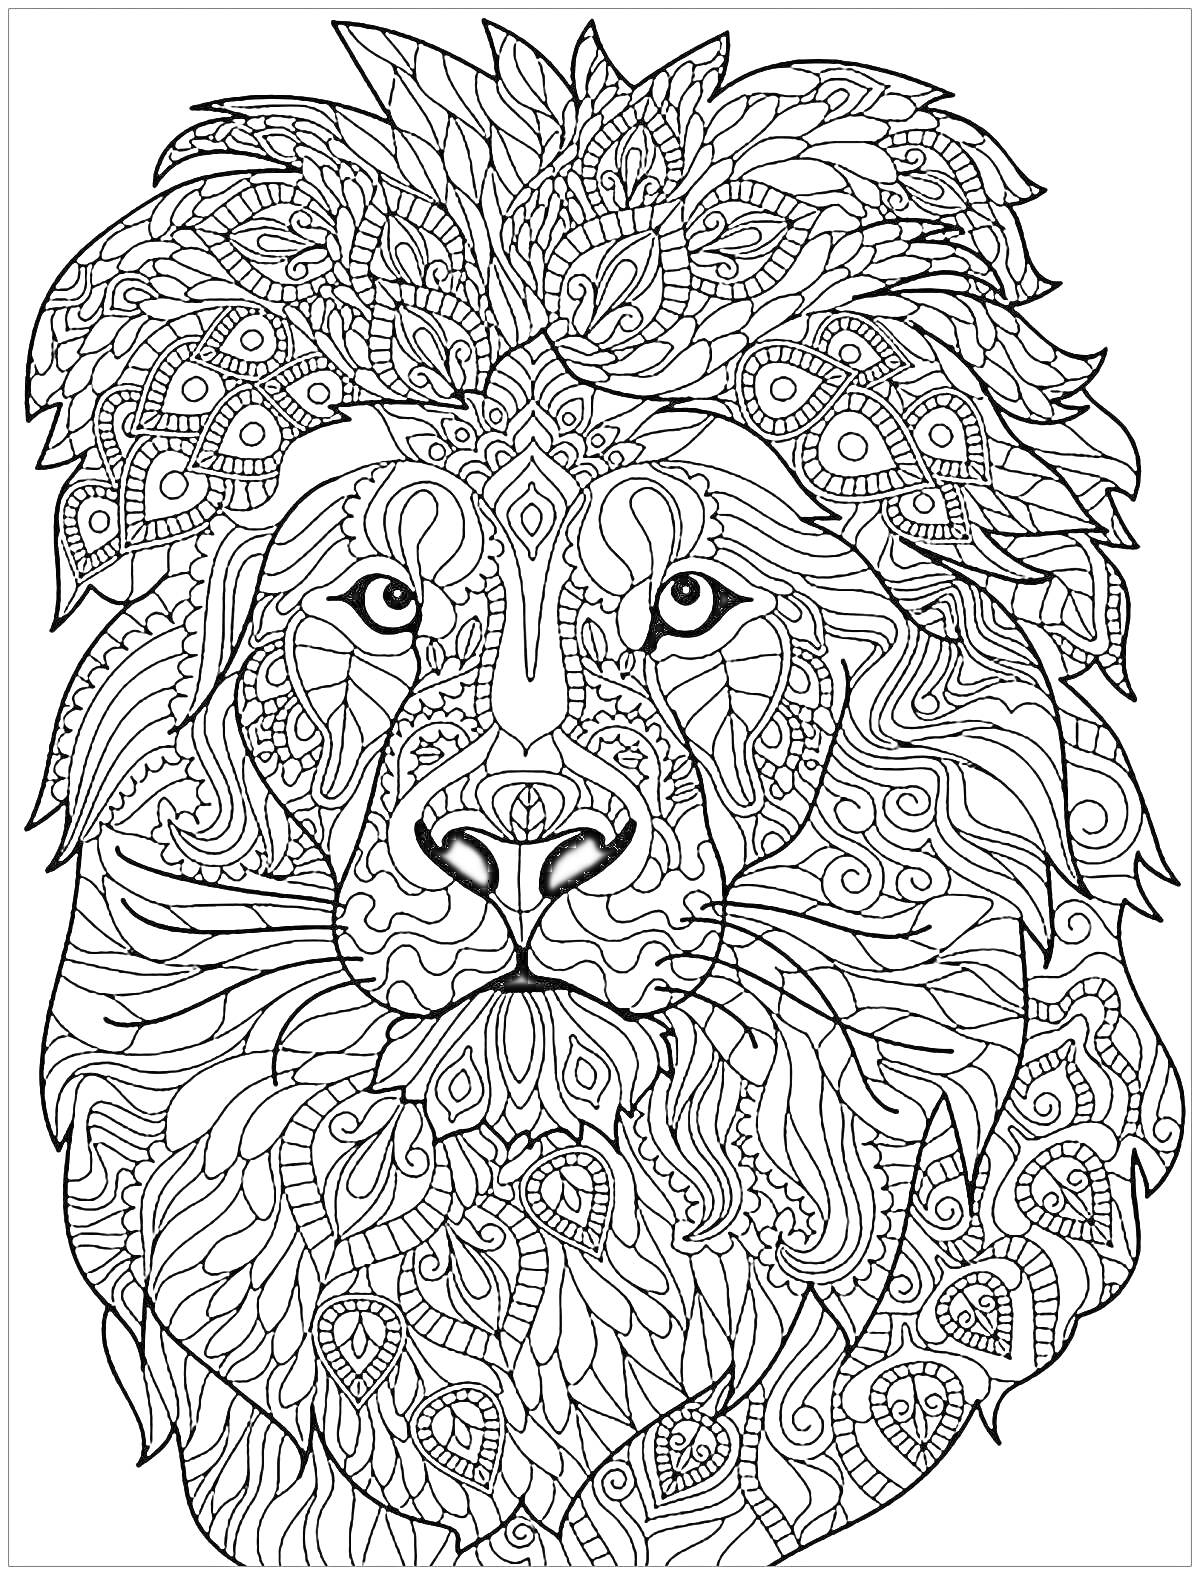 Раскраска Лев с декоративными элементами, медитативный узор во львиной гриве и на морде